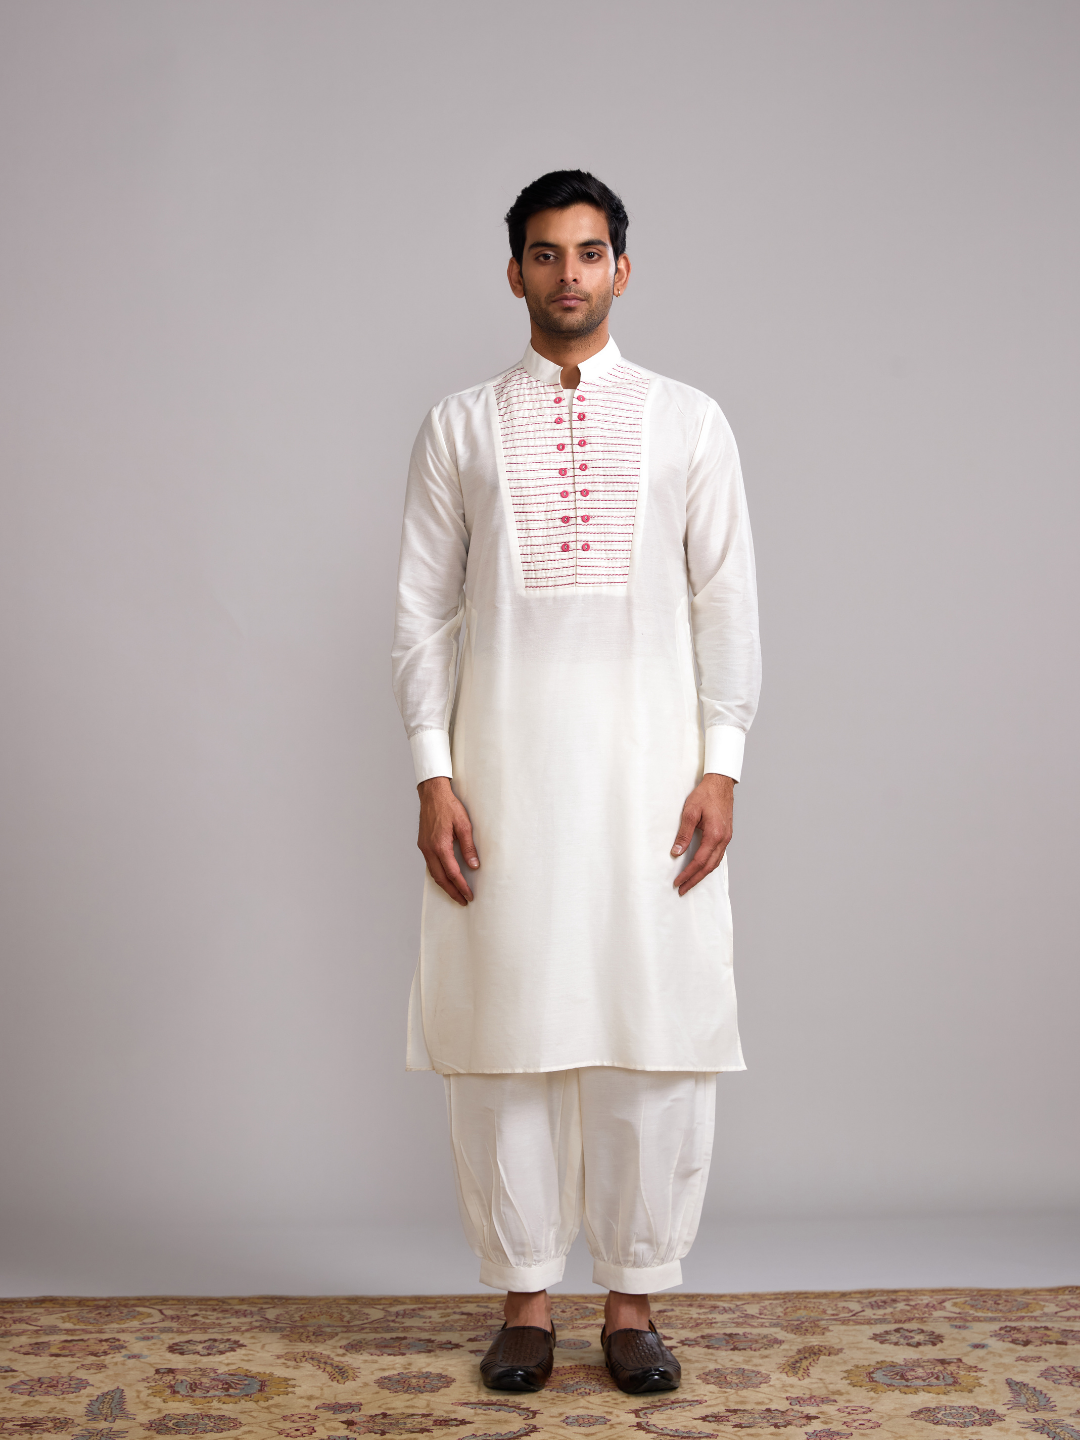 Pintuck yoke straight kurta paired with pathani pants- Ivory